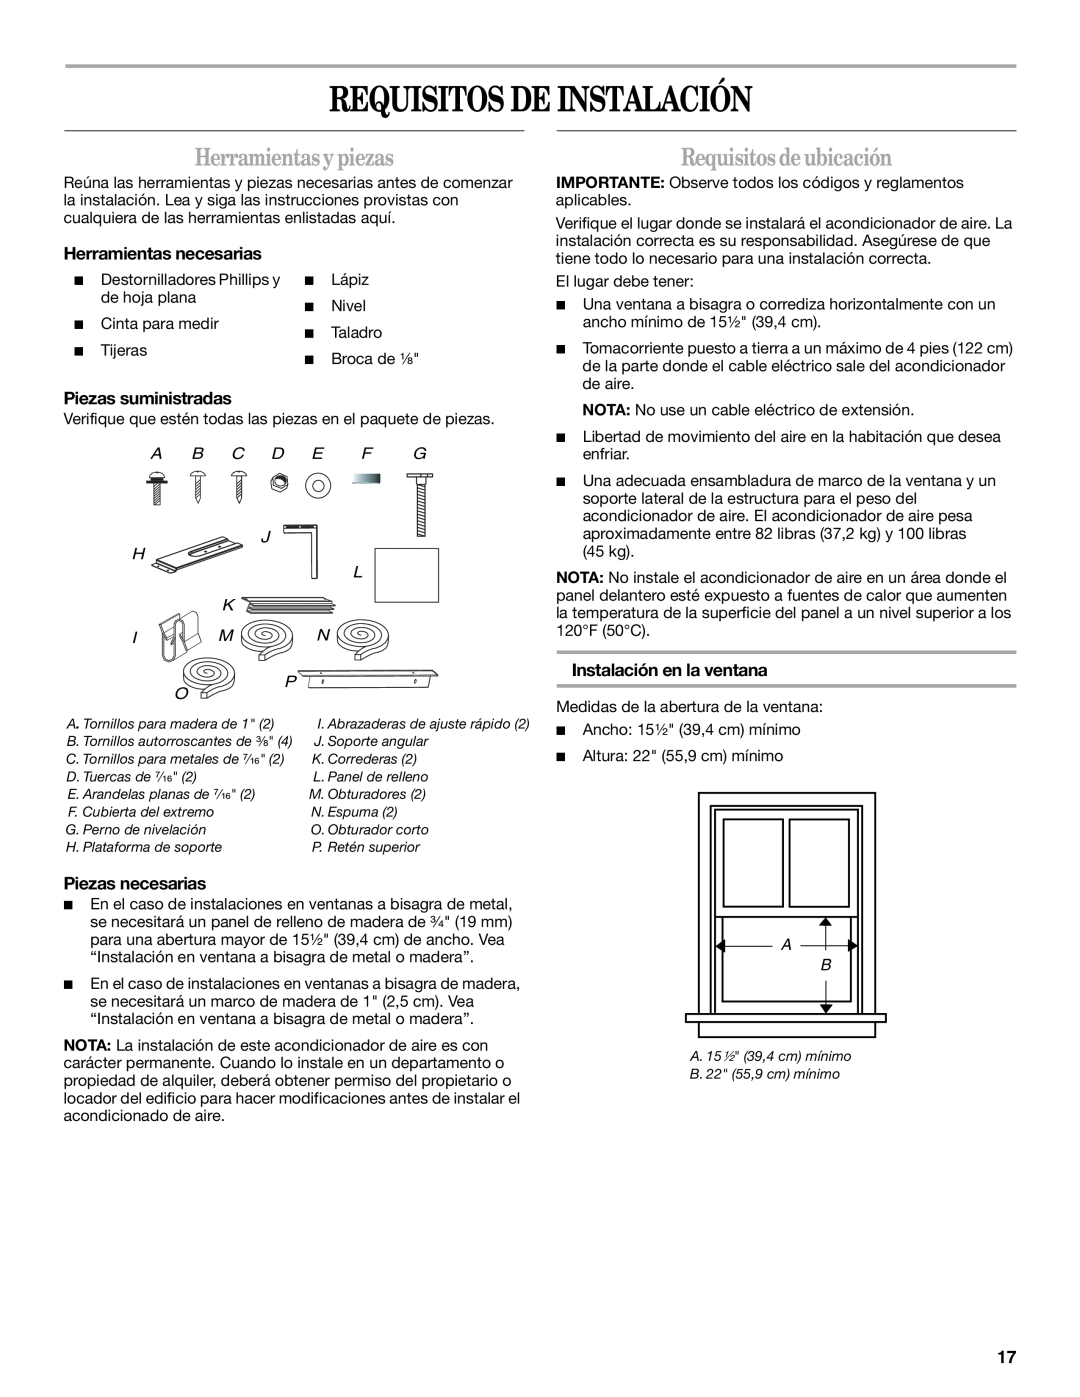 Whirlpool ACS088PR0 manual Requisitos De Instalación, Herramientasypiezas, Requisitos deubicación, Herramientas necesarias 